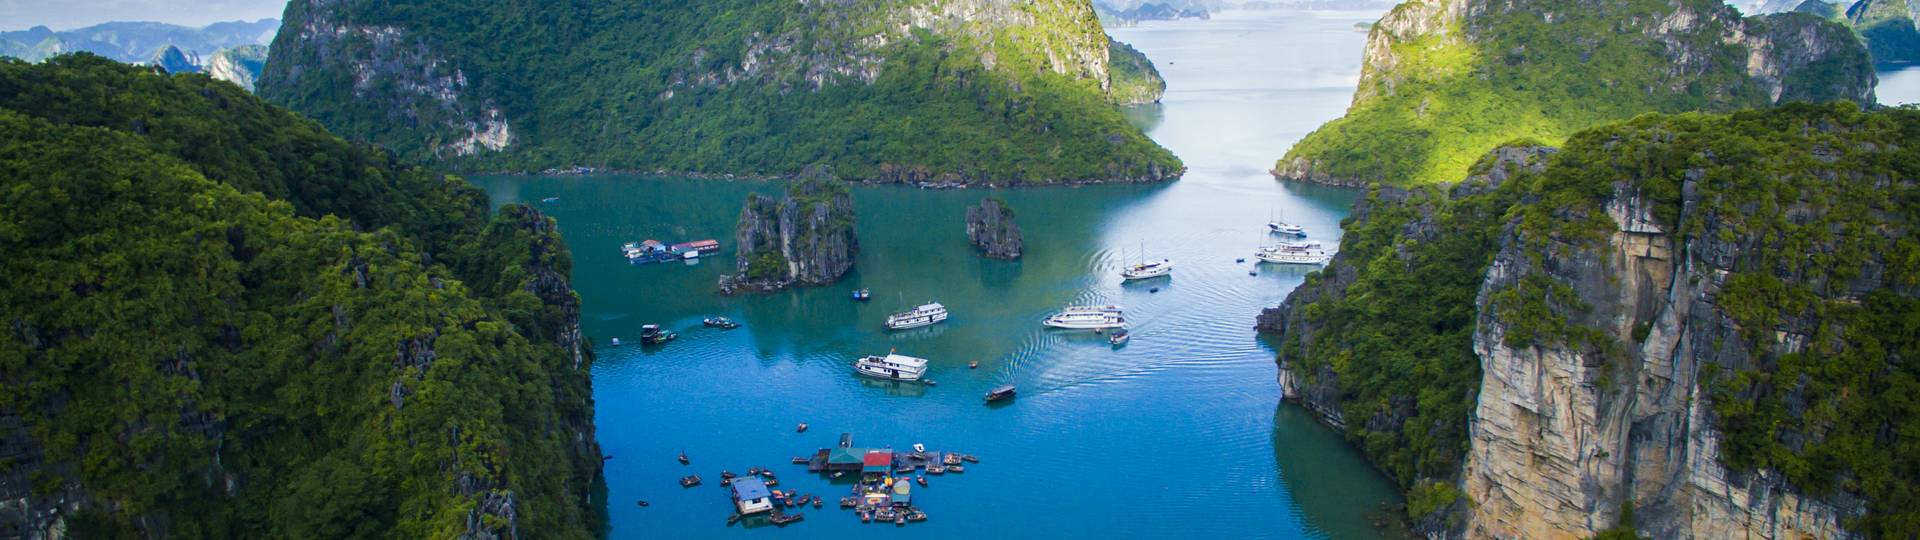 Baie de Lan Ha - Merveille Naturelle